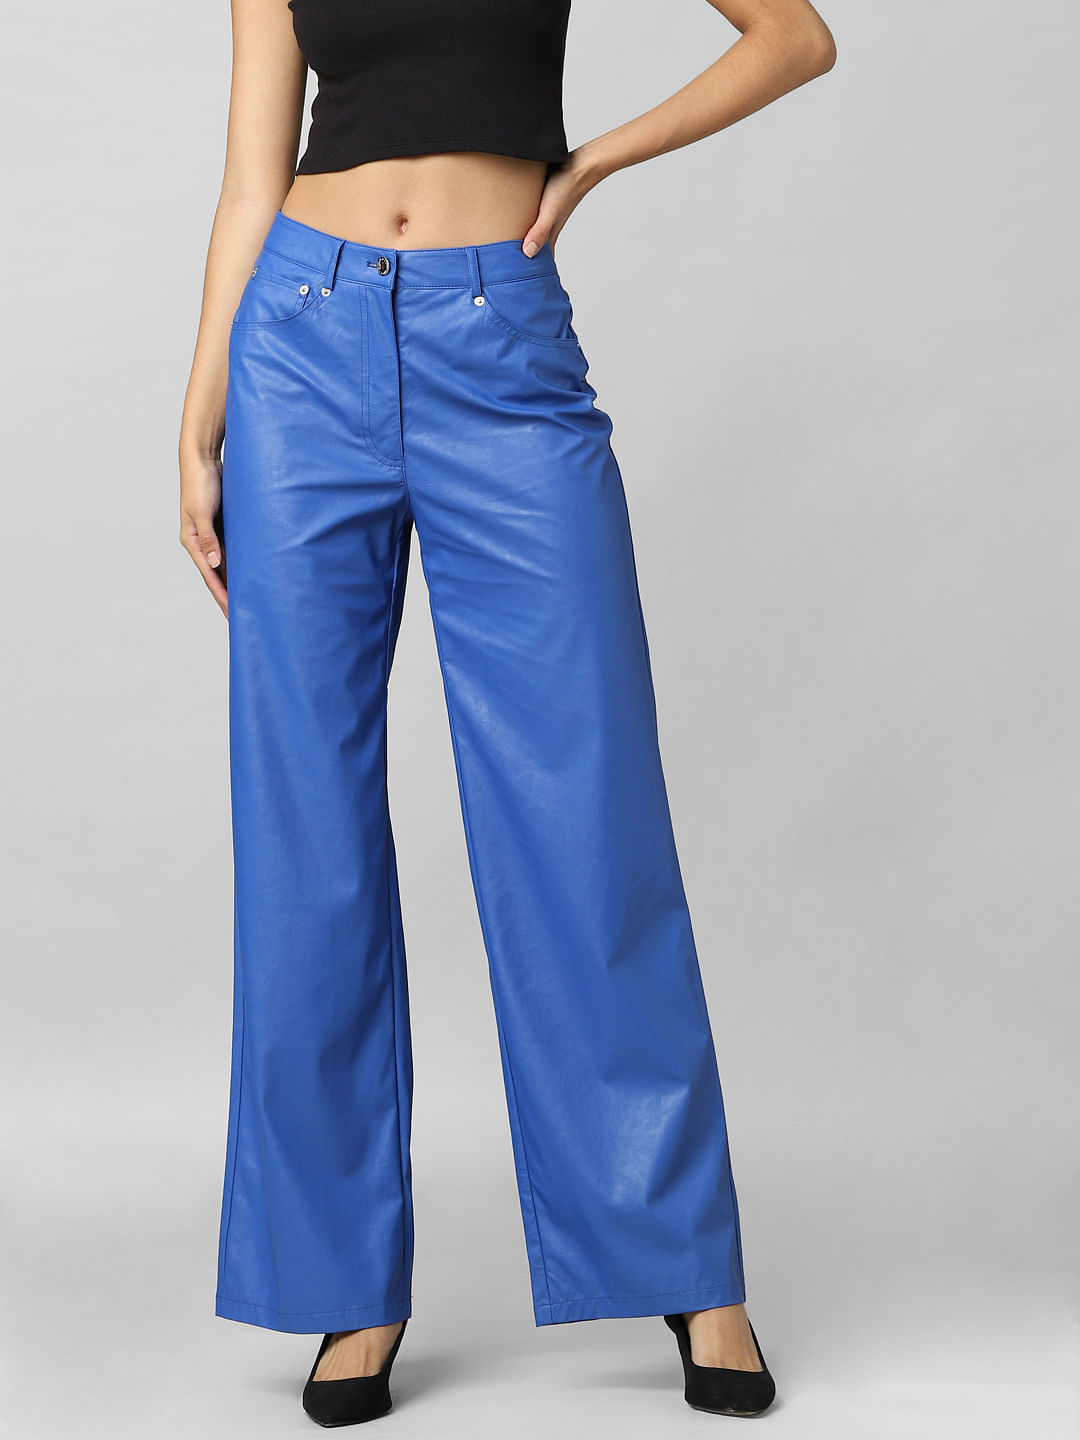 FT ROYAL BLUE HIGH WAIST PANTS | Velvet flare pants, High waisted pants,  Blue velvet pants